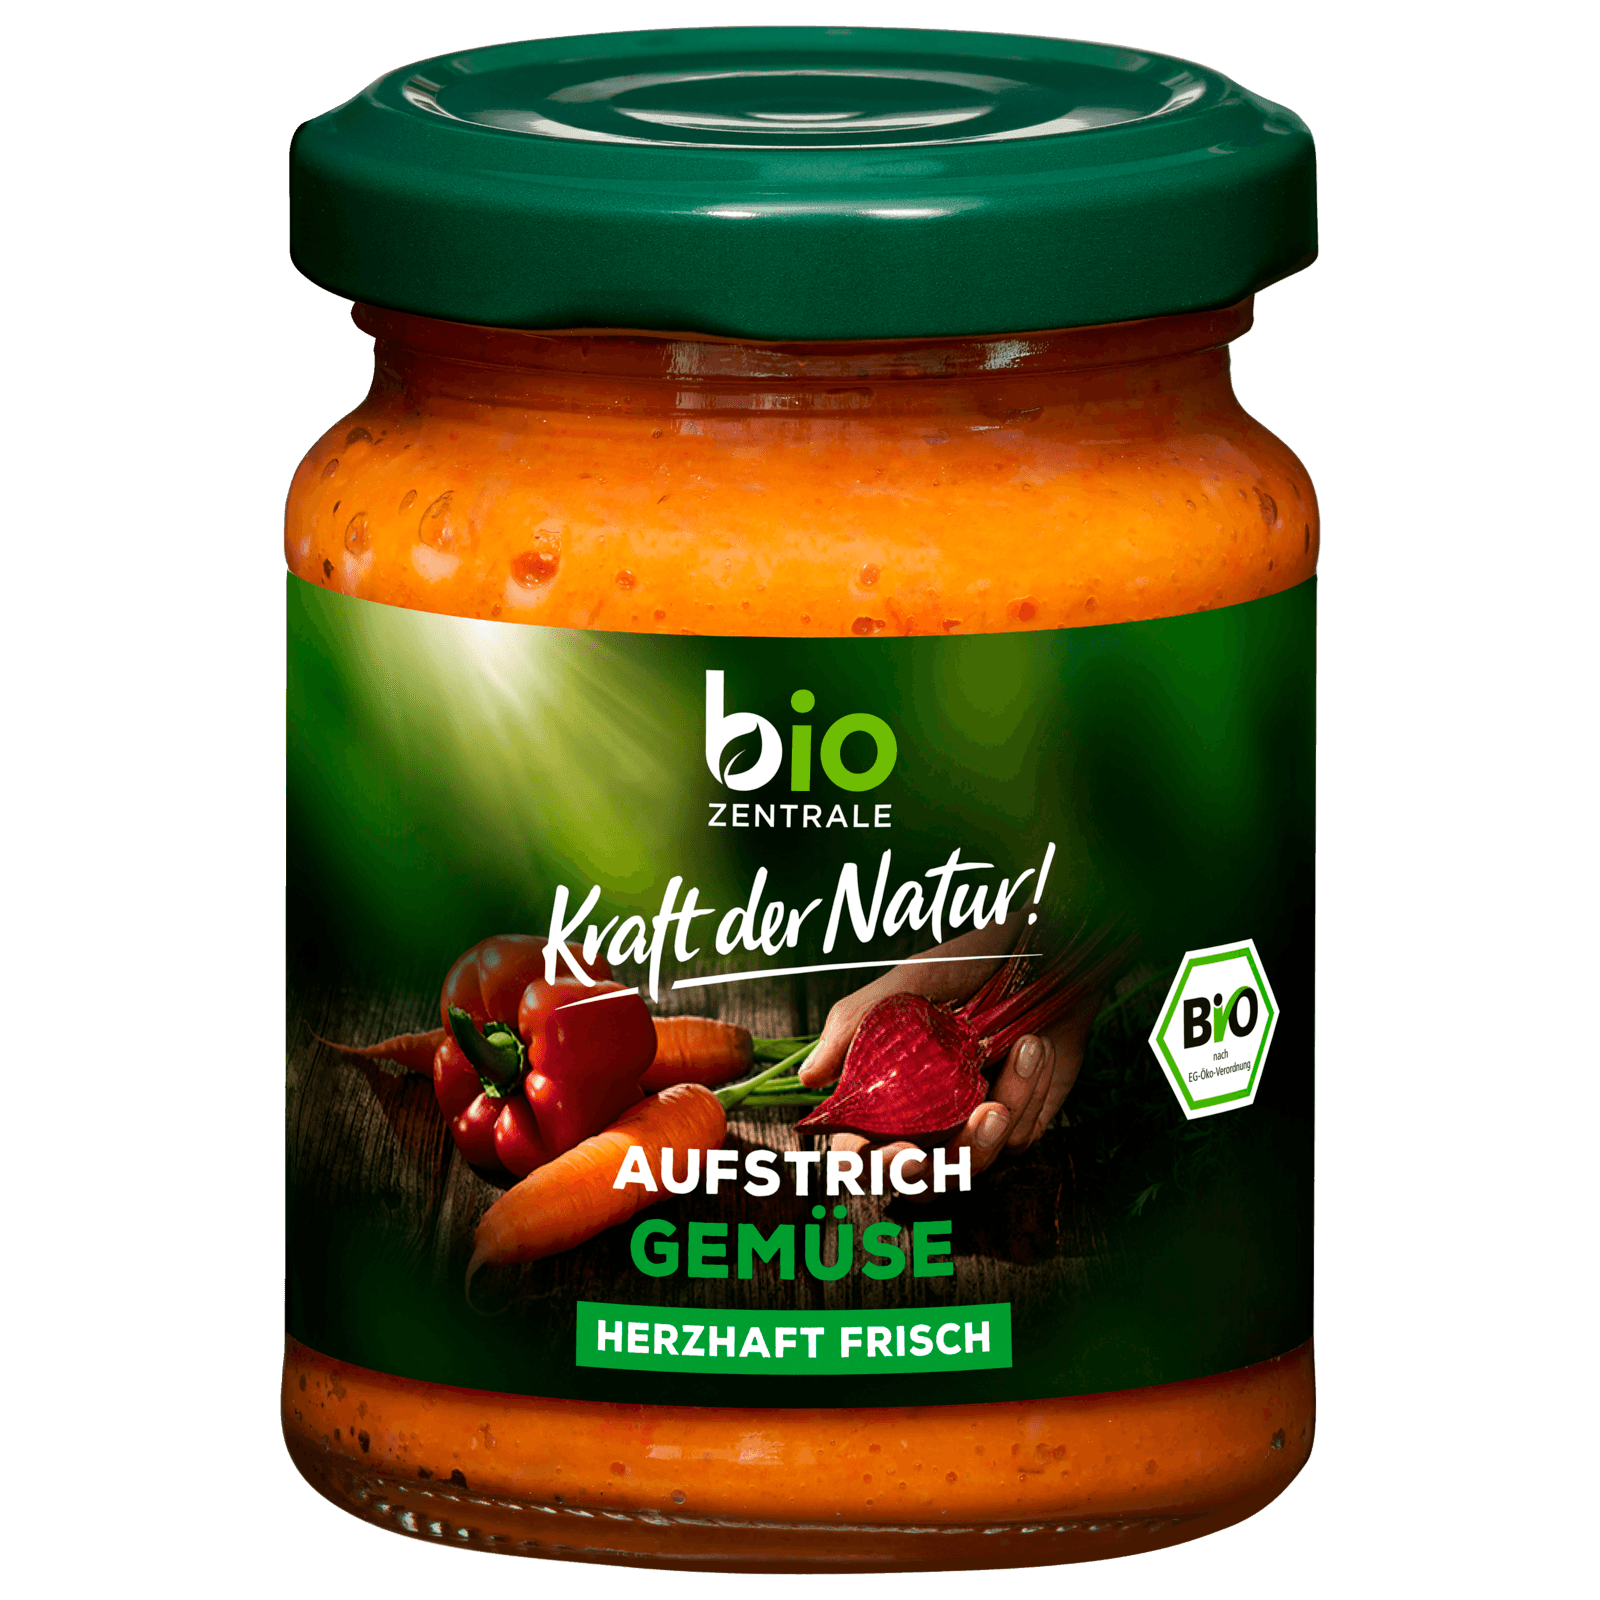 Bio Zentrale Brotaufstrich Gemüse 125g bei REWE online bestellen!